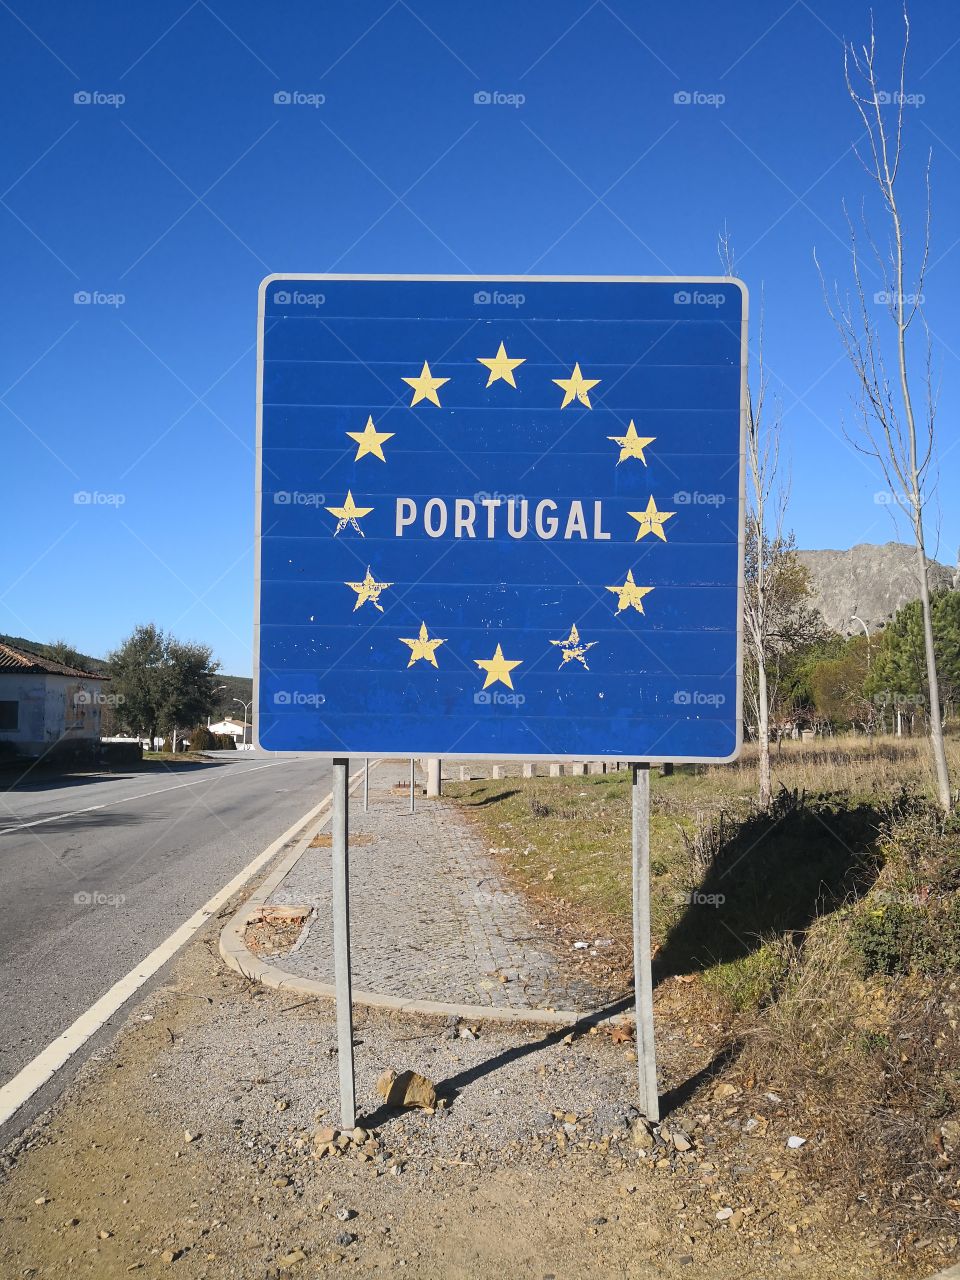 Portugal Board